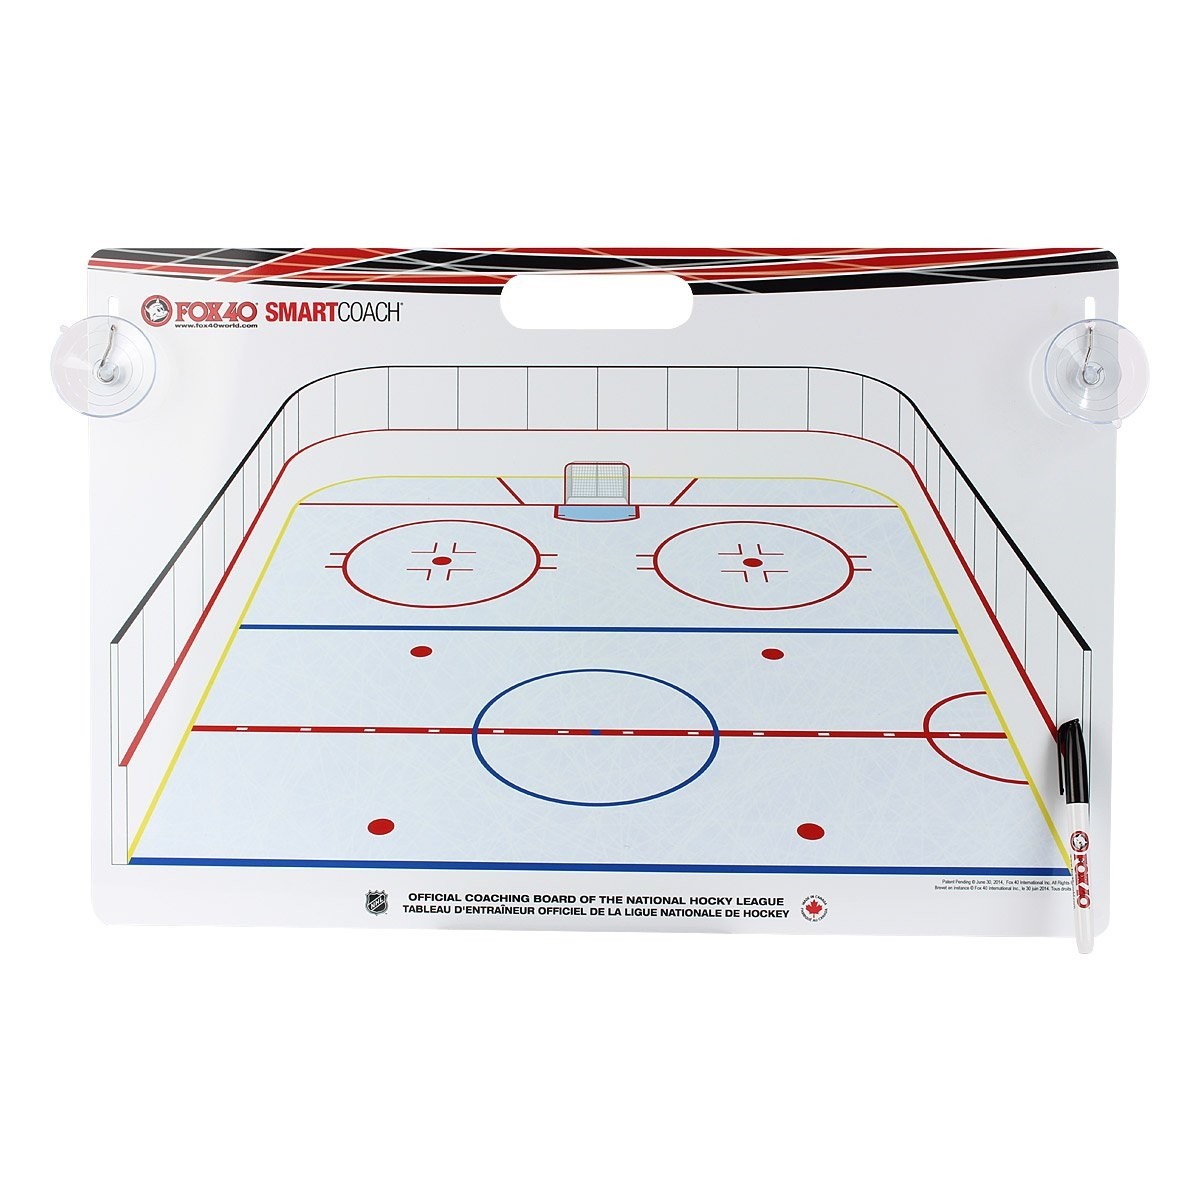 FOX 40 Deluxe Pro Clipboard + Rigid Kit International Hockey Coaching Board